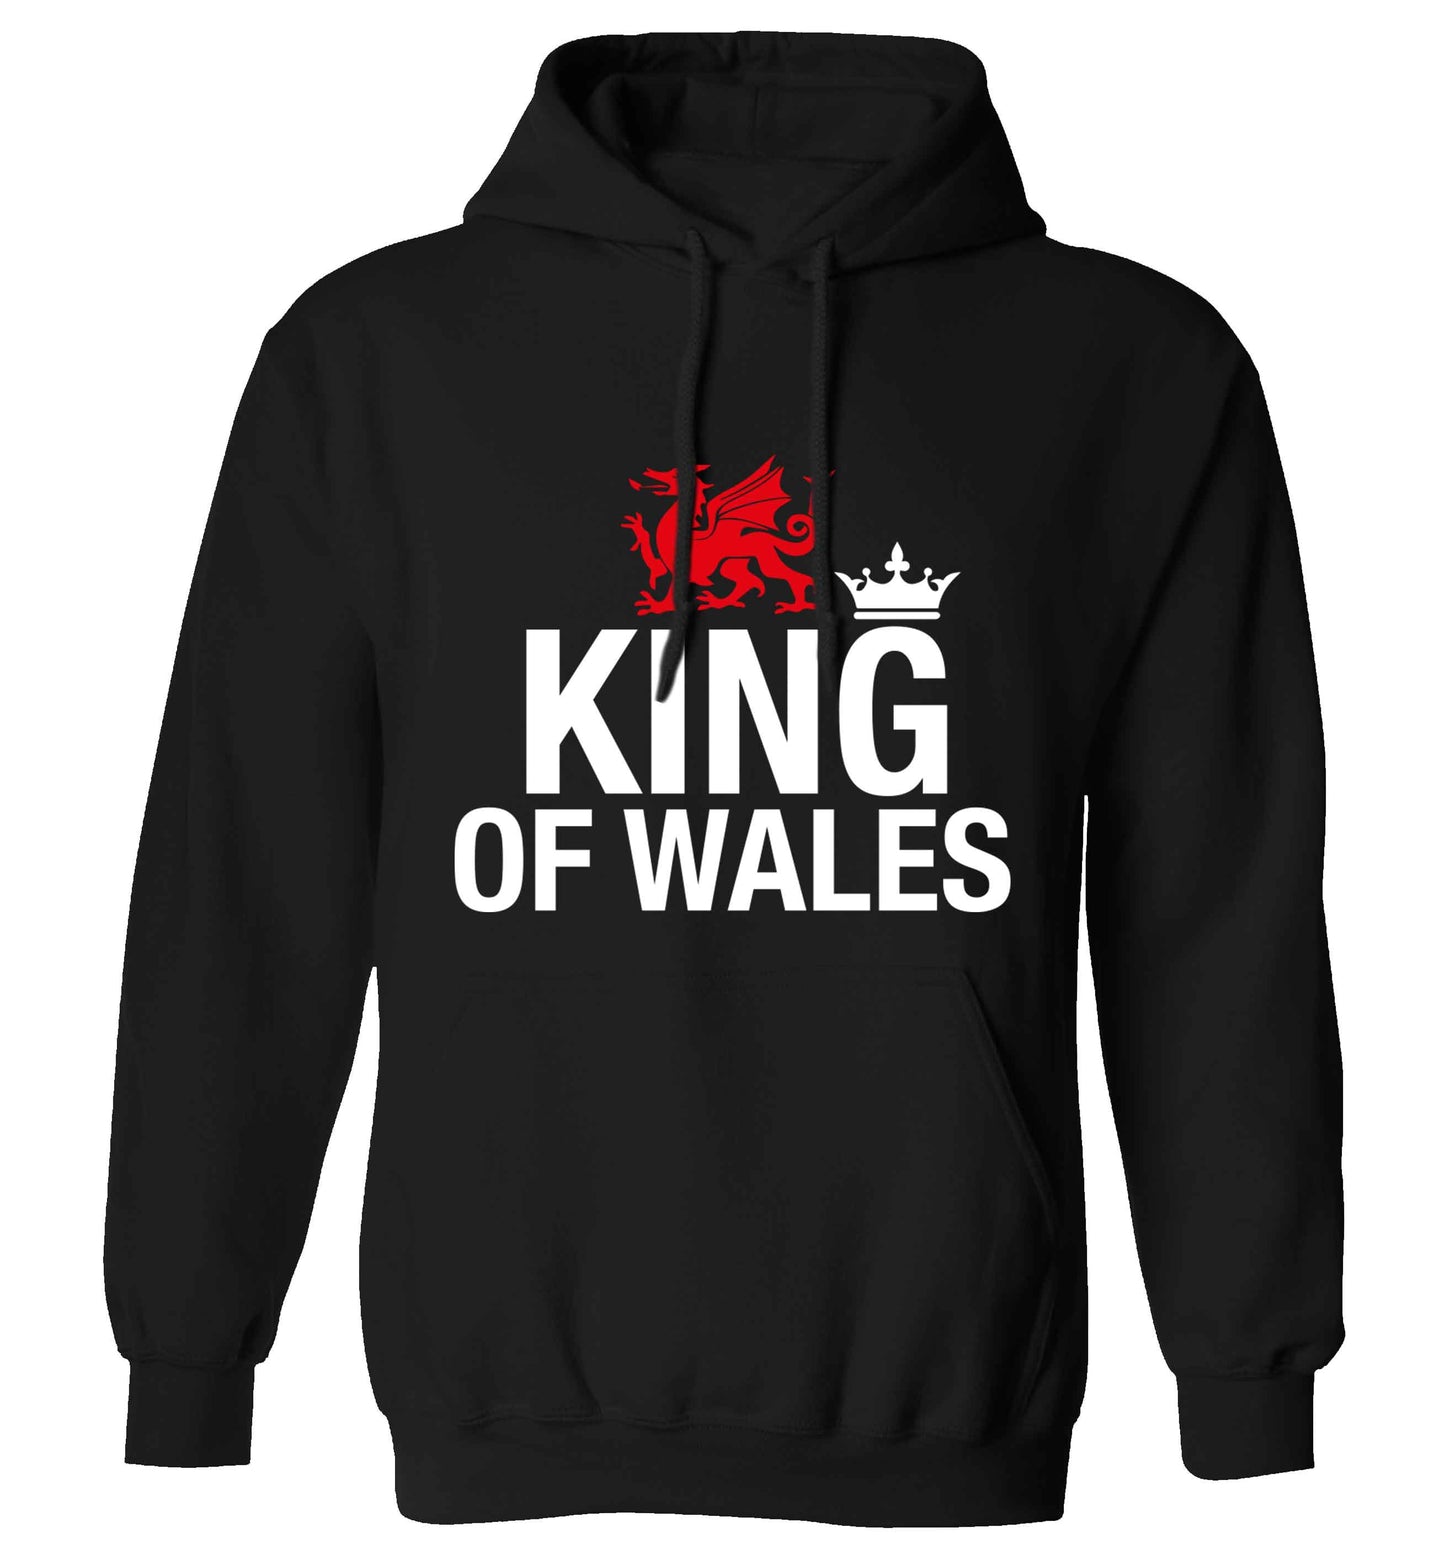 King of Wales adults unisex black hoodie 2XL